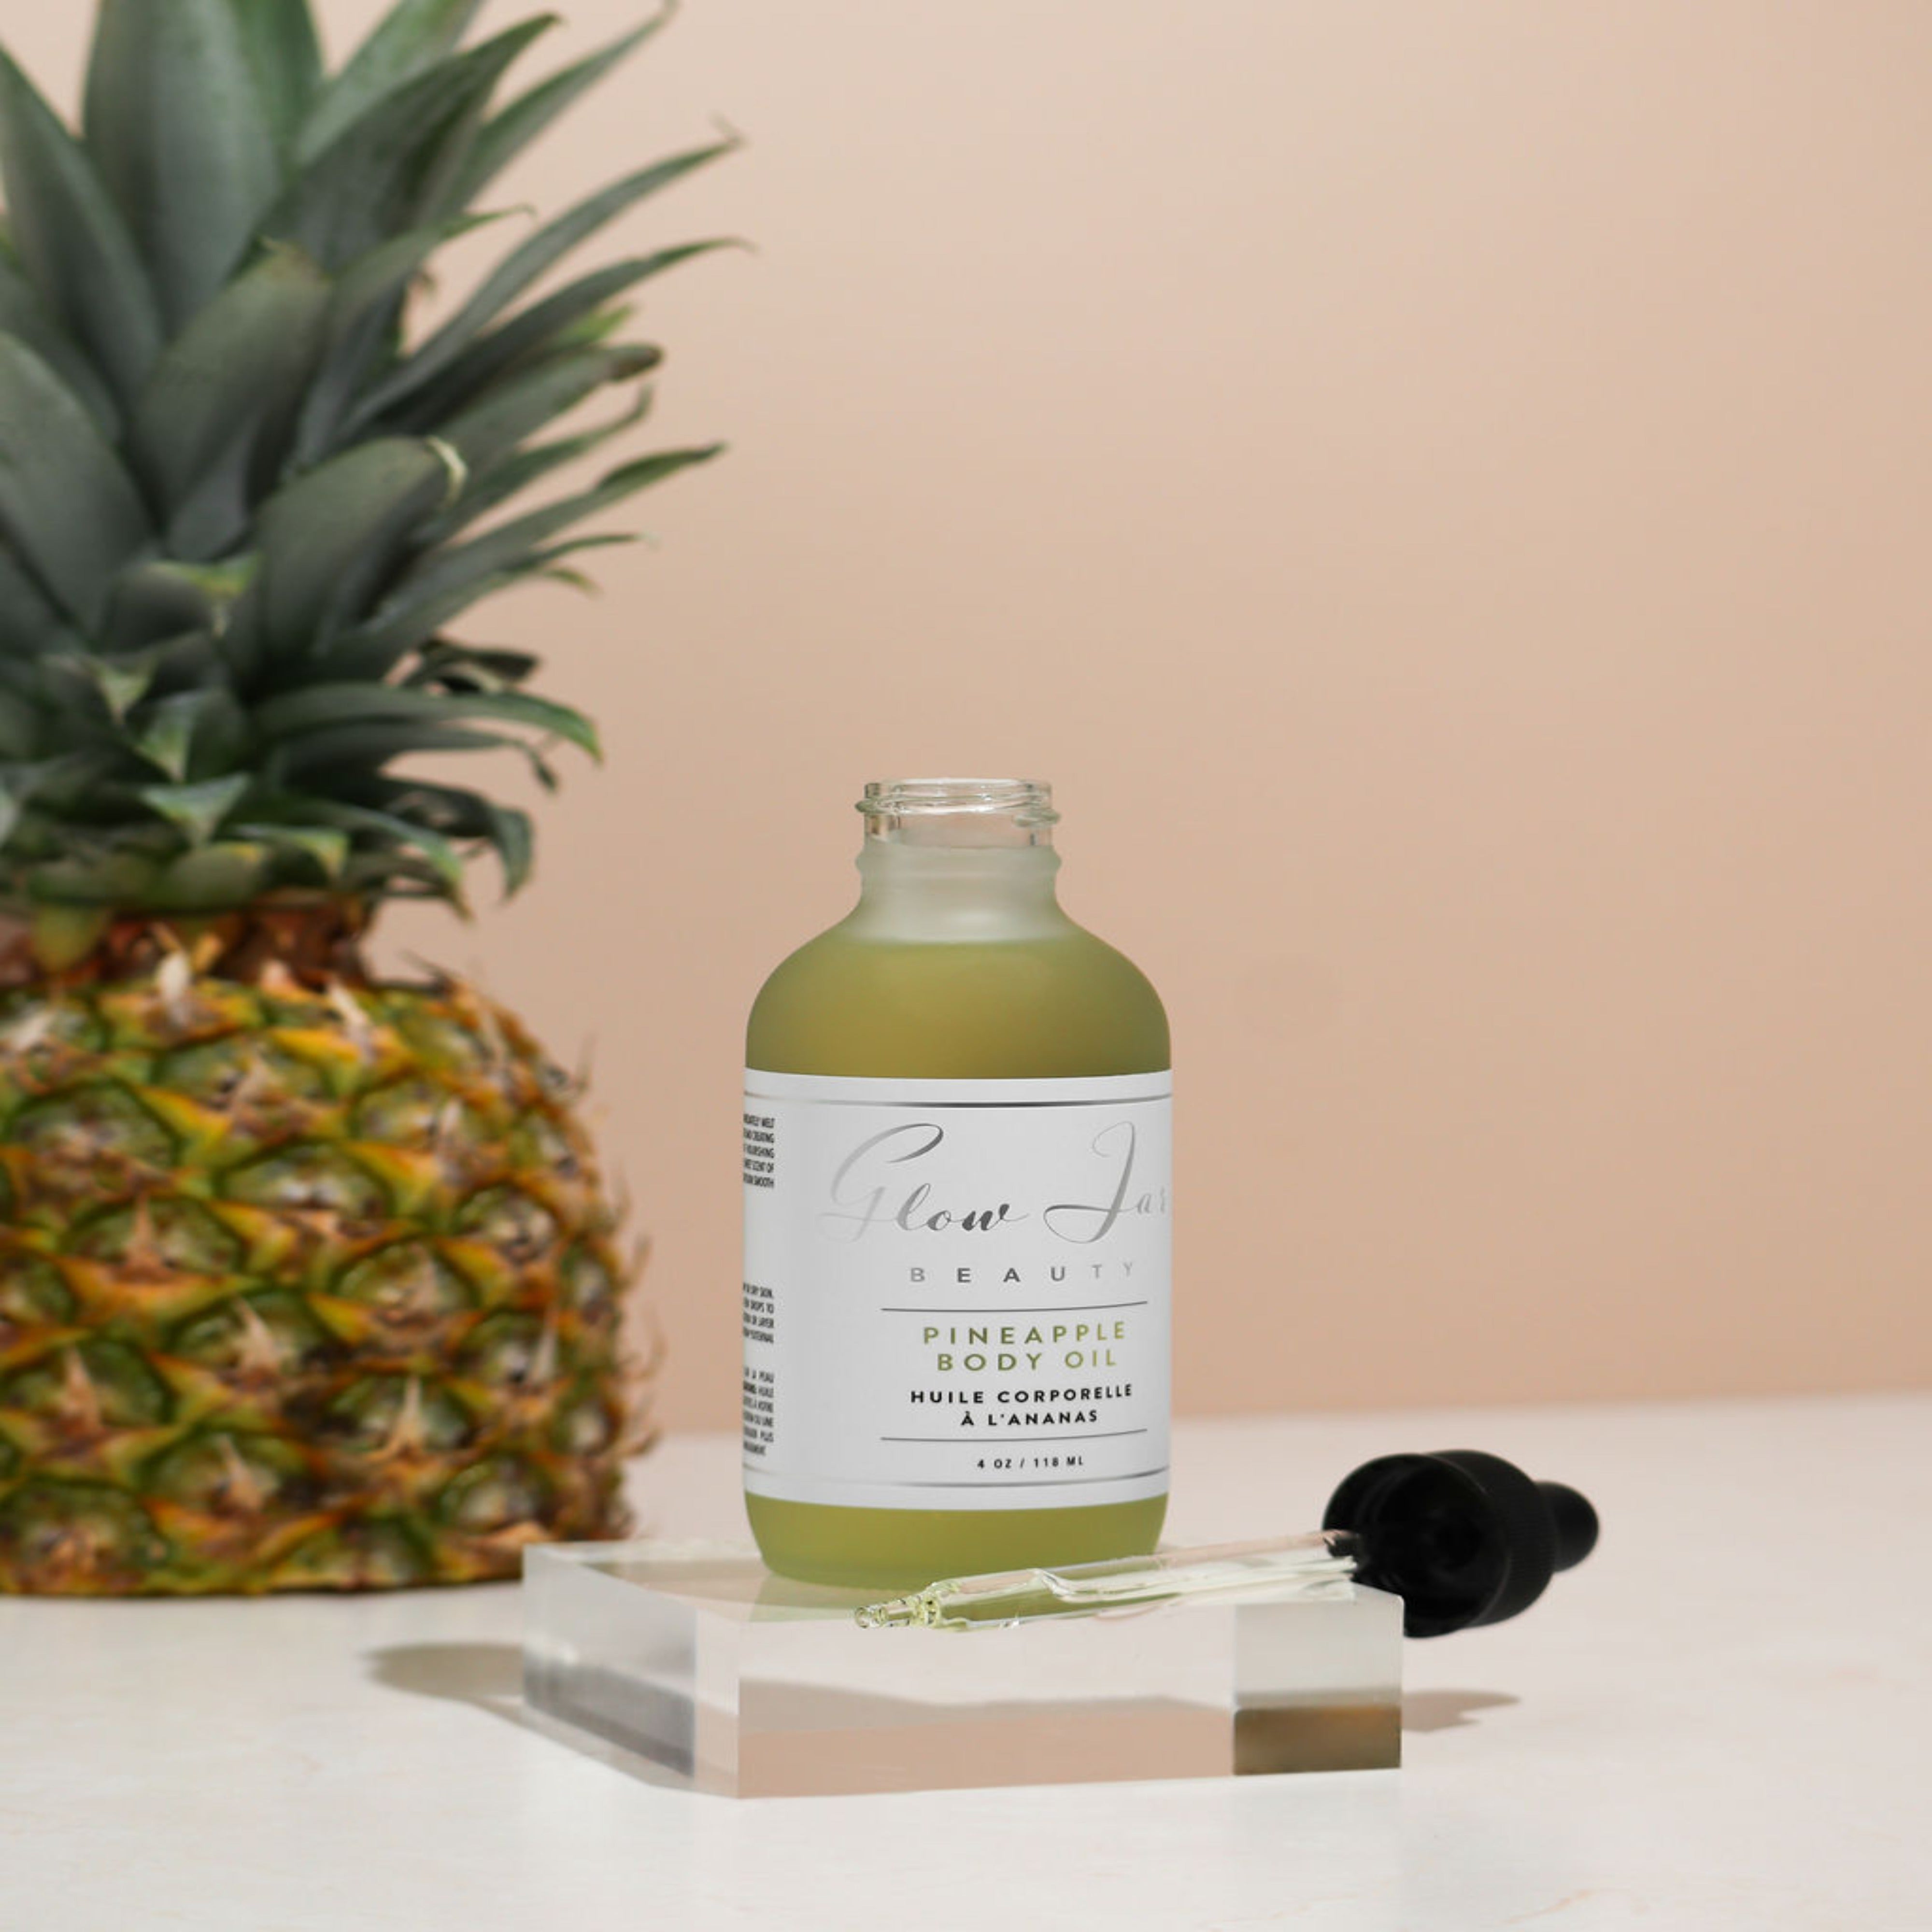 Pineapple Body Oil • Glow Jar Beauty & Skincare – Glow Jar Beauty Inc.